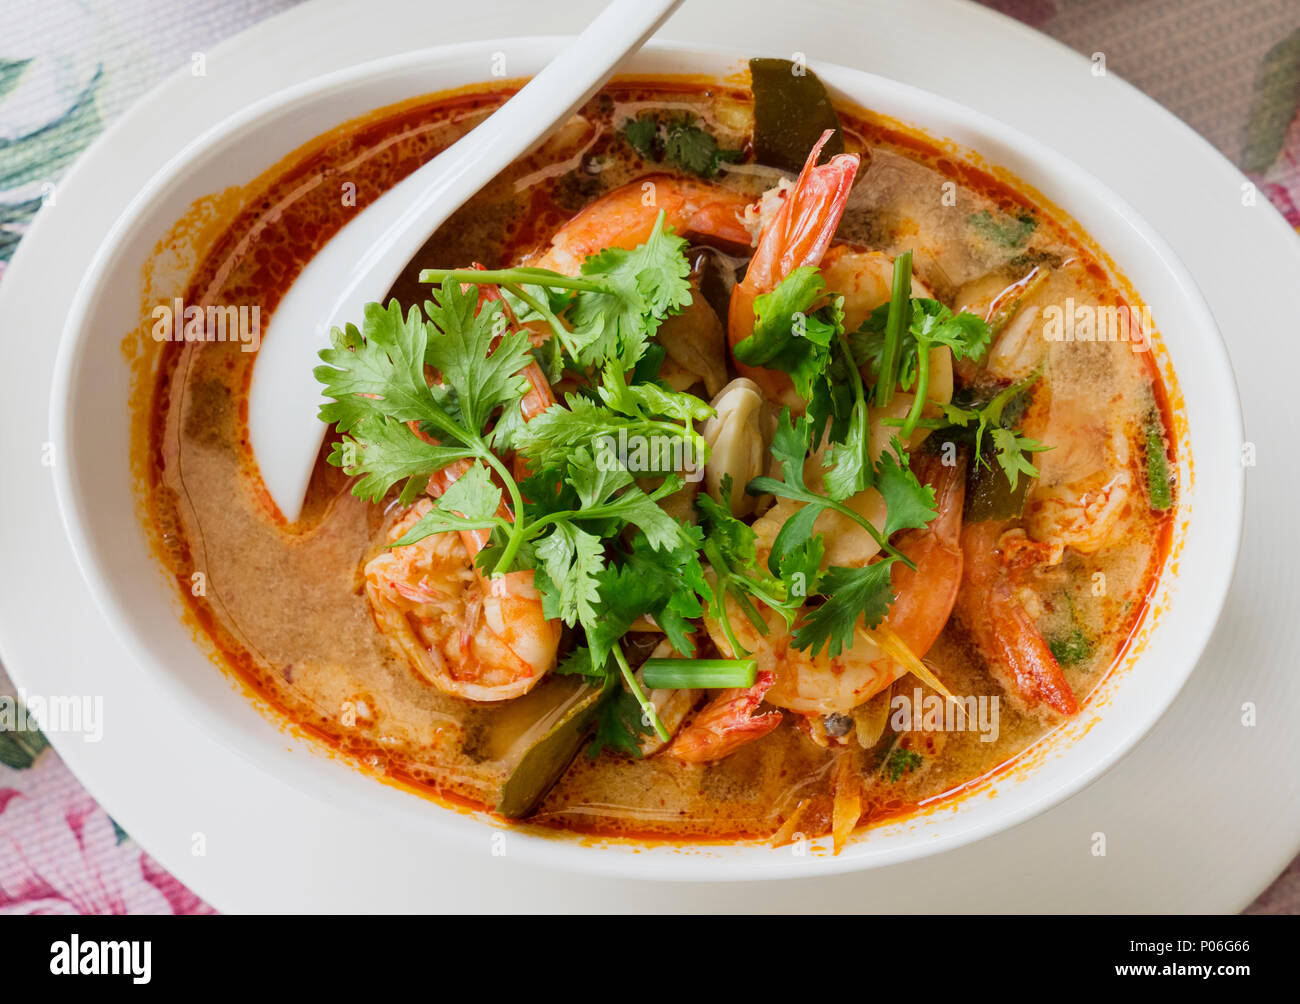 Tom Yam kung, la soupe aigre traditionnel thaï aux crevettes et champignons, garni de coriandre. La photo montre la version rouge de la soupe, faite d'esprit Banque D'Images